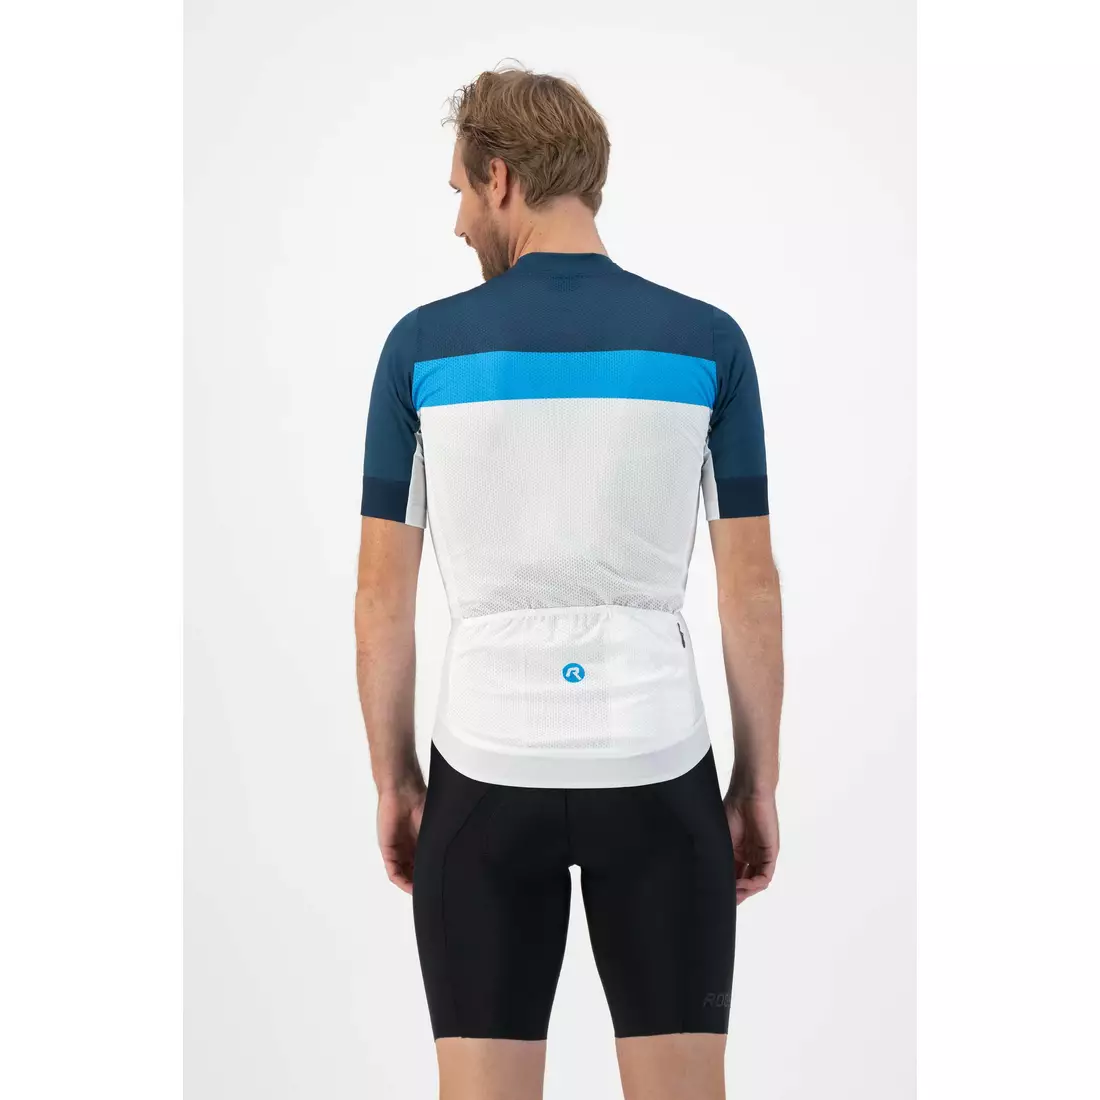 ROGELLI PRIME pánsky cyklistický dres biela a modrá